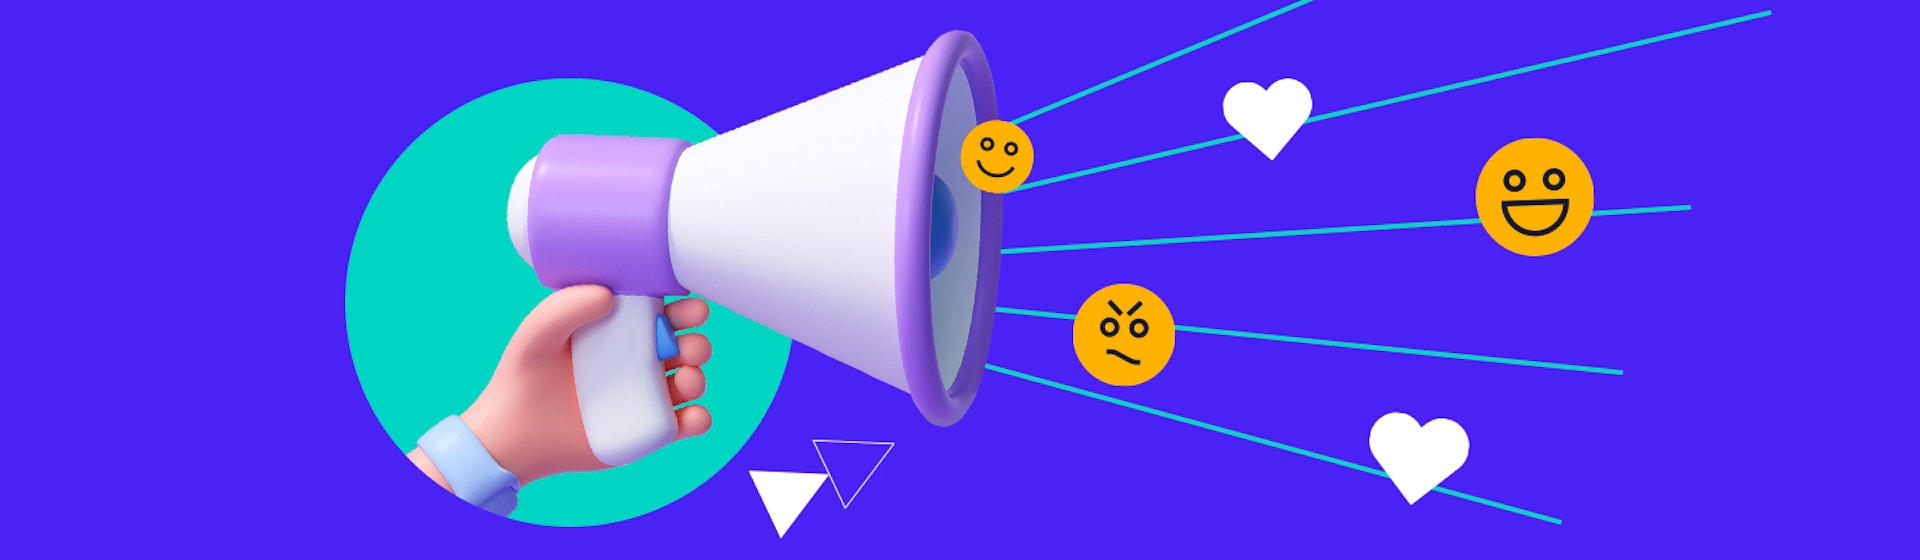 8 grandes ejemplos de marketing emocional: cómo sensibilizar a tu audiencia